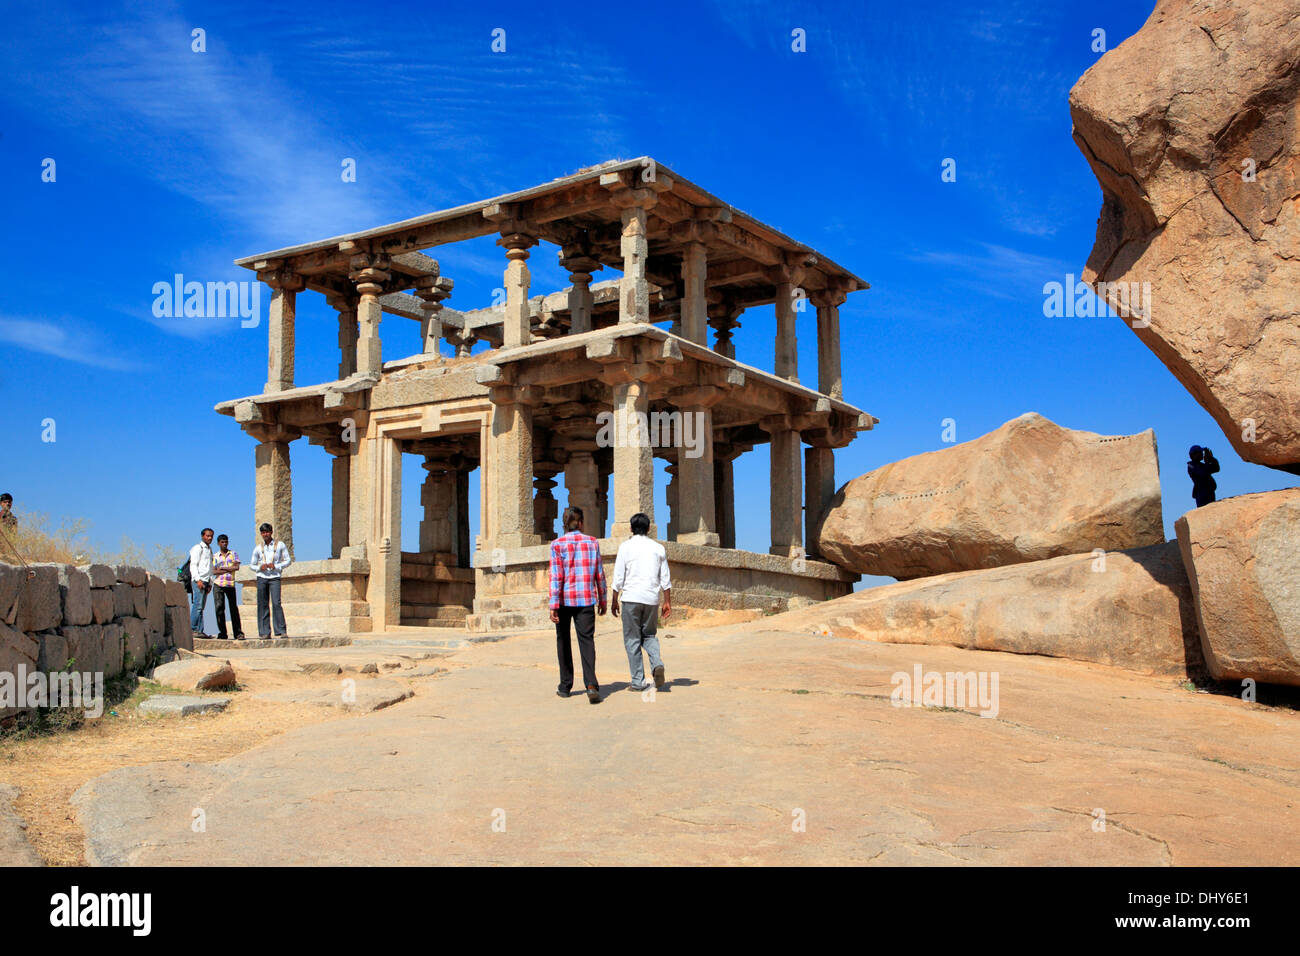 Ruines de Vijayanagara, Hampi, Karnataka, Inde Banque D'Images